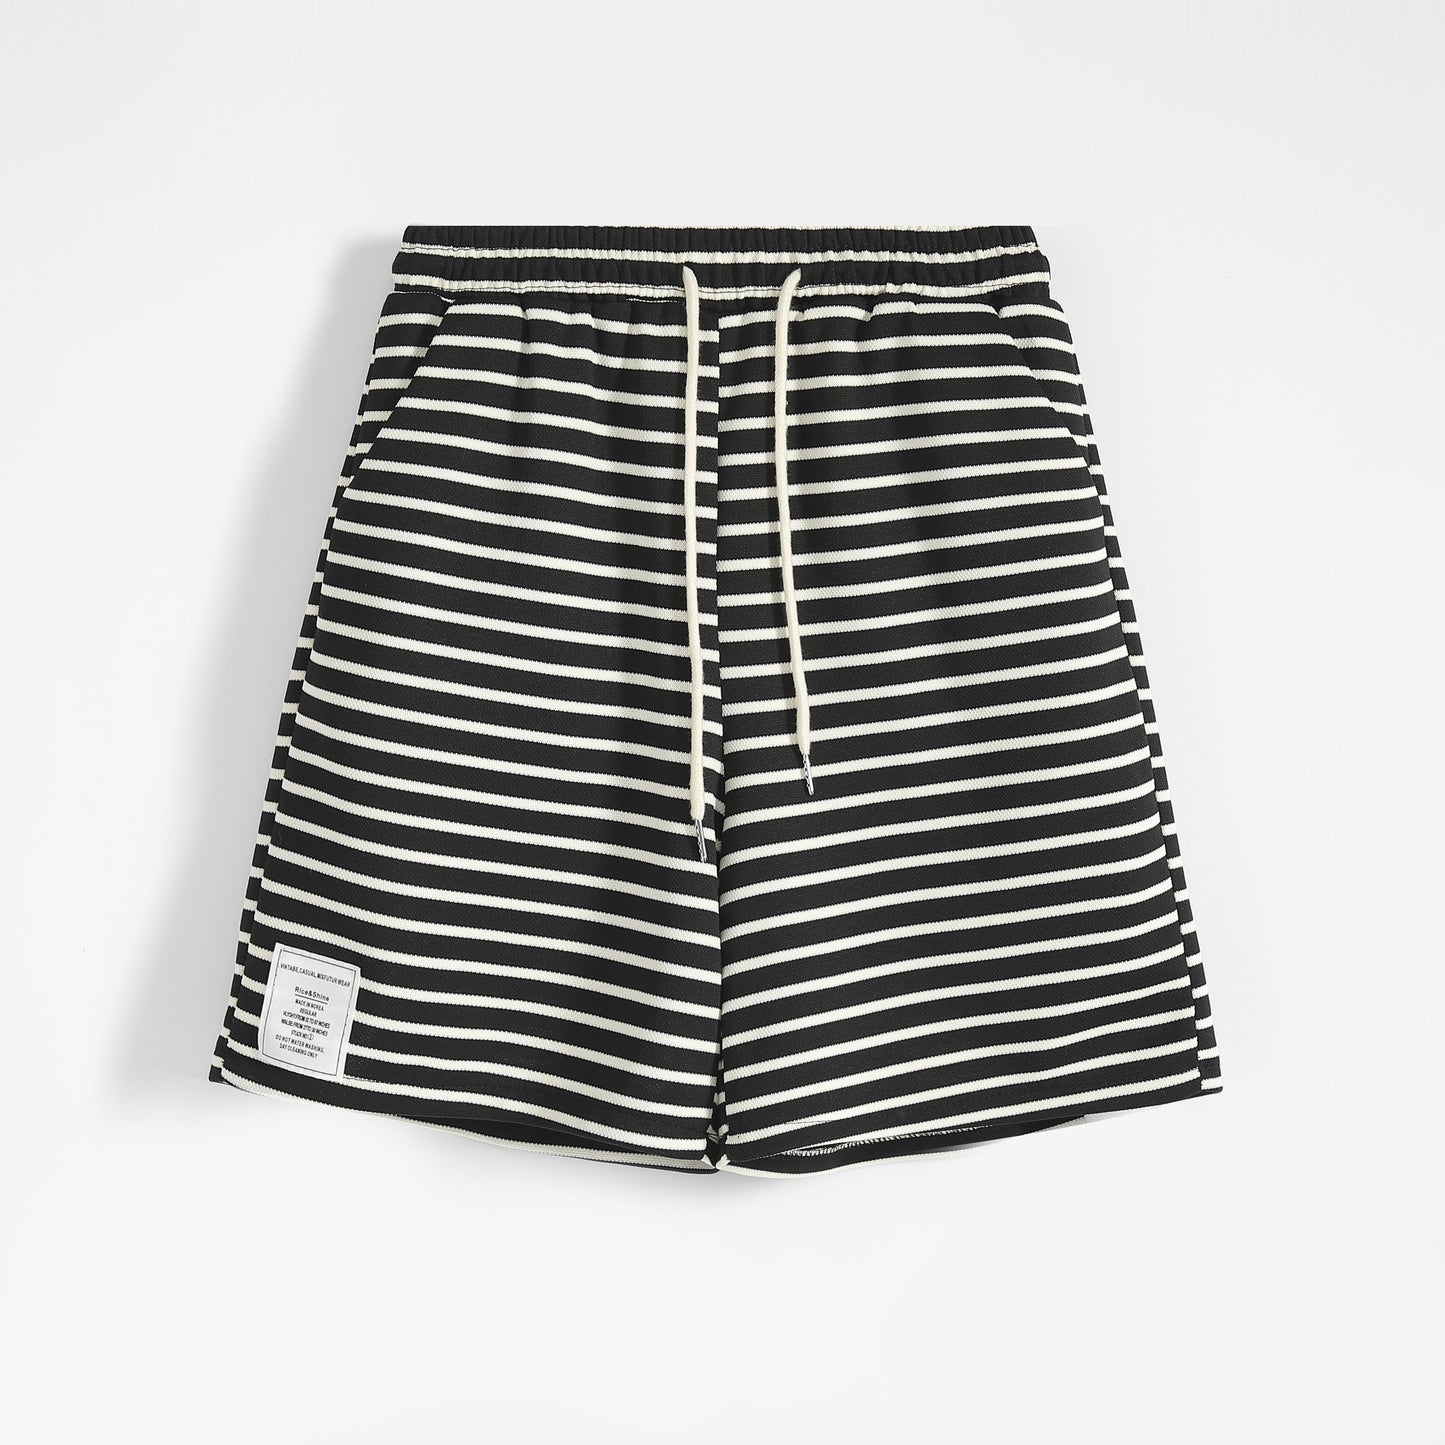 Lockere, weite Shorts mit schwarz-weißen Streifen, elastischem Bund und Kordelzug.